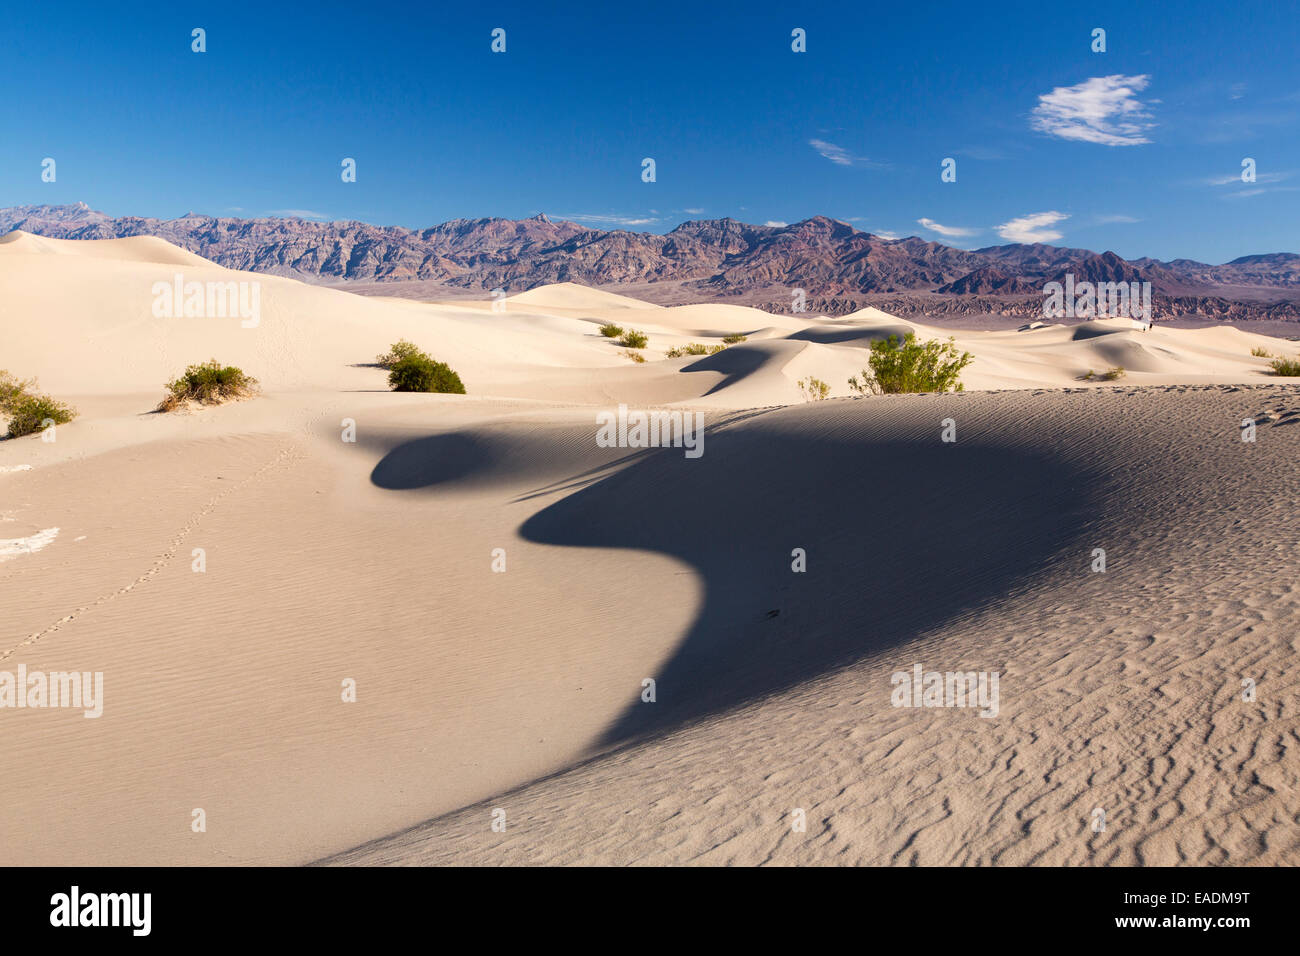 Le mesquite flat dunes dans la vallée de la mort qui est le plus faible, le plus chaud, le plus sec aux Etats-Unis, avec une moyenne annuelle rainf Banque D'Images